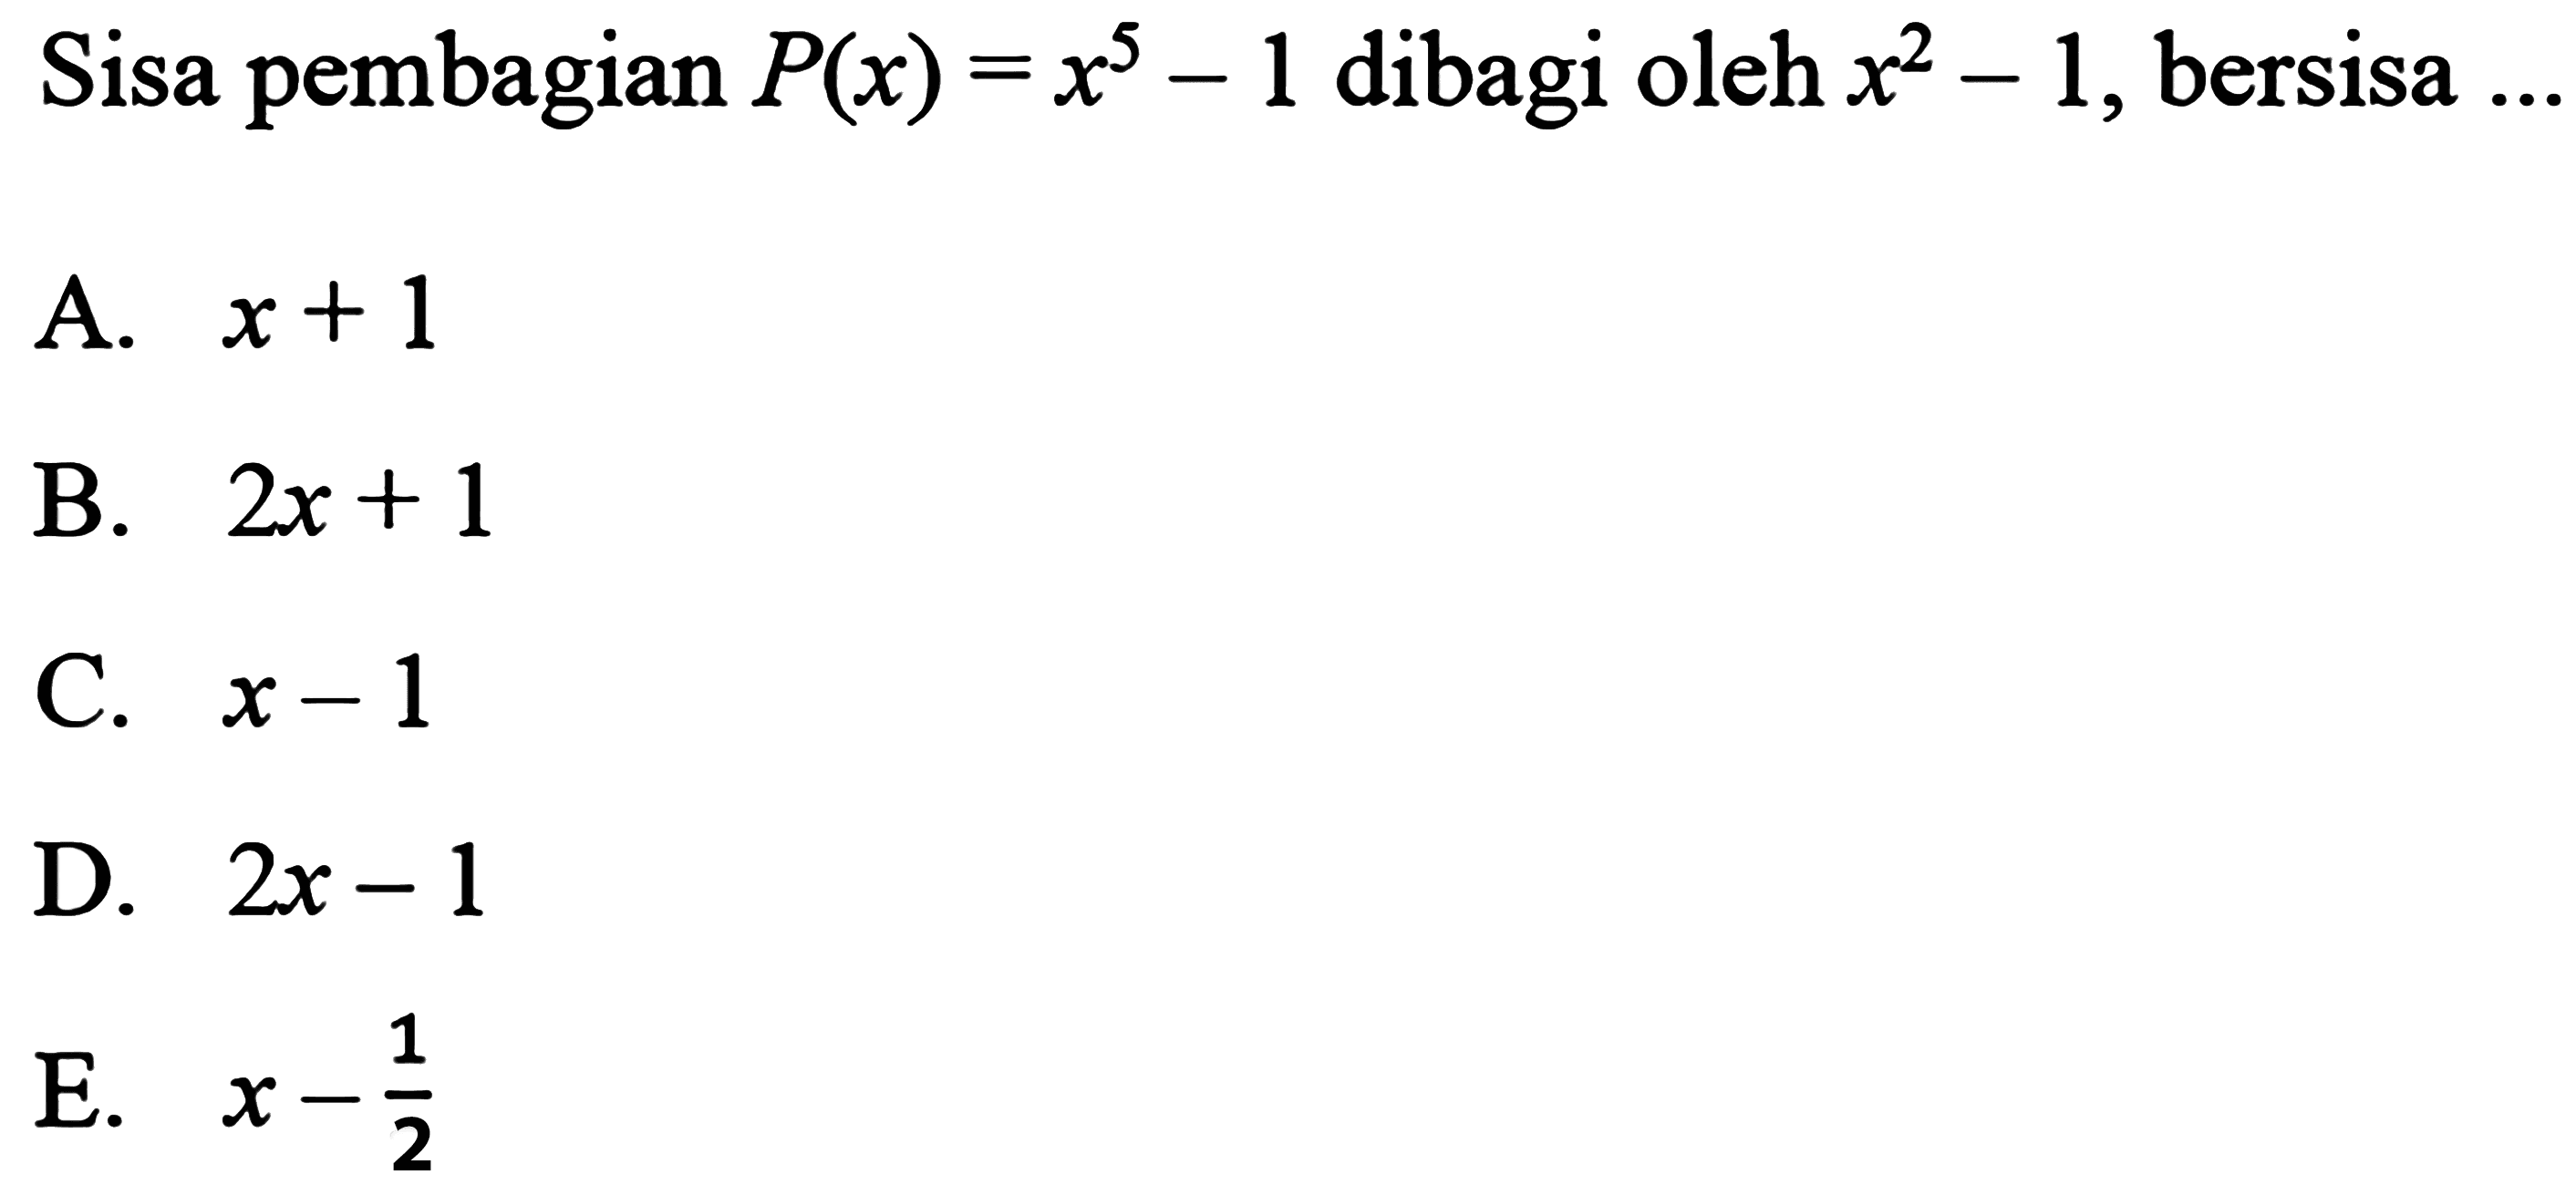 Sisa pembagian P(x) = x^5 - 1 dibagi oleh x^2 - 1, bersisa....